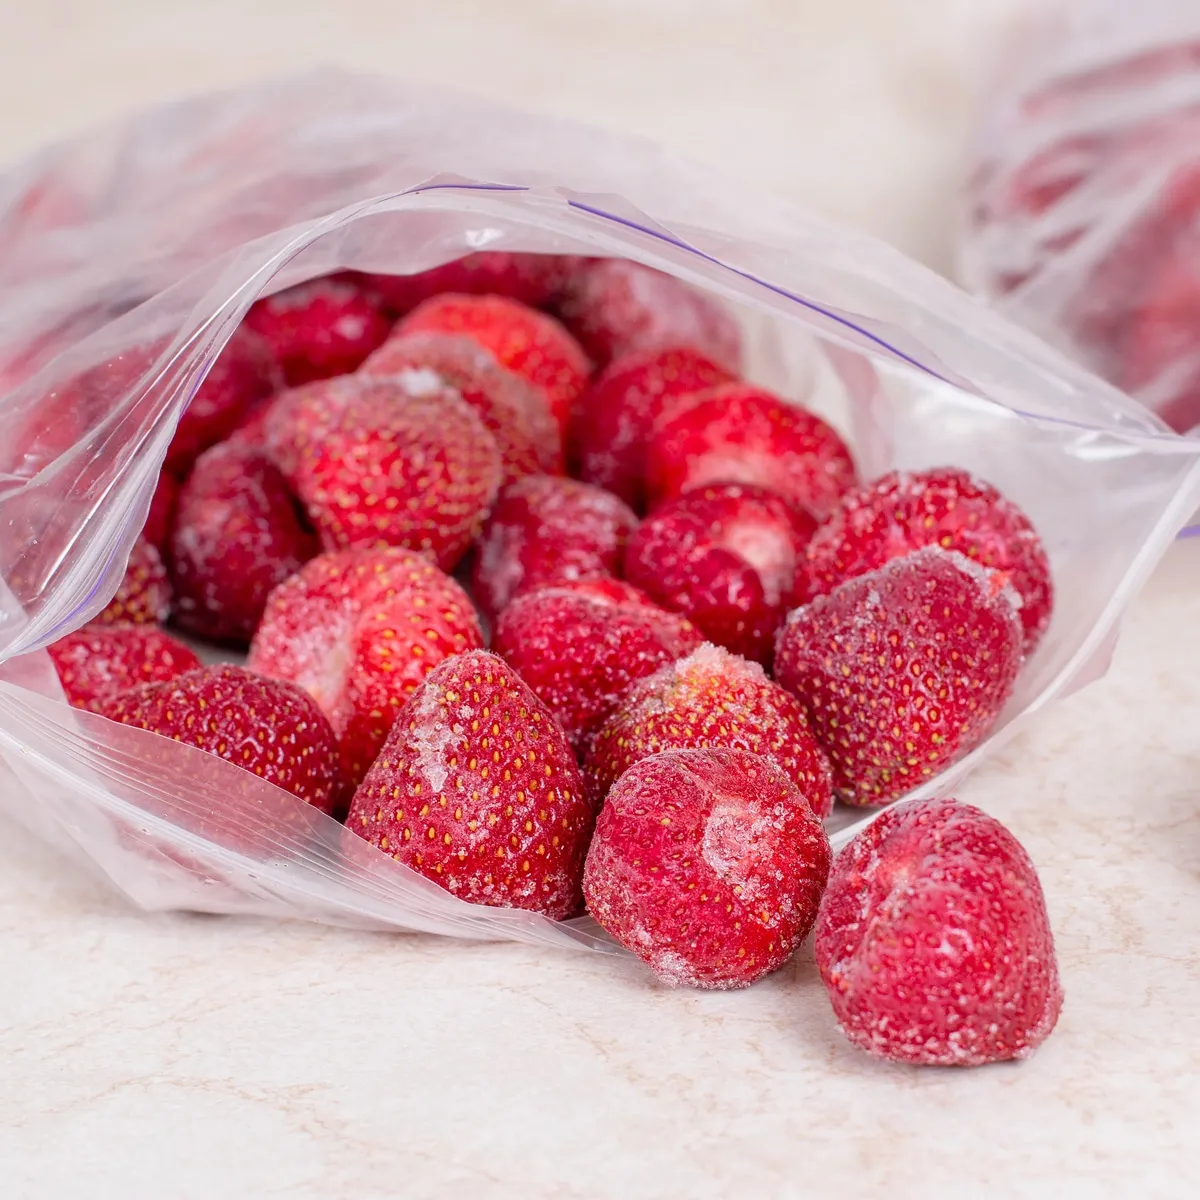 erdbeeren einfriern in plastikbeutel aufbewahren